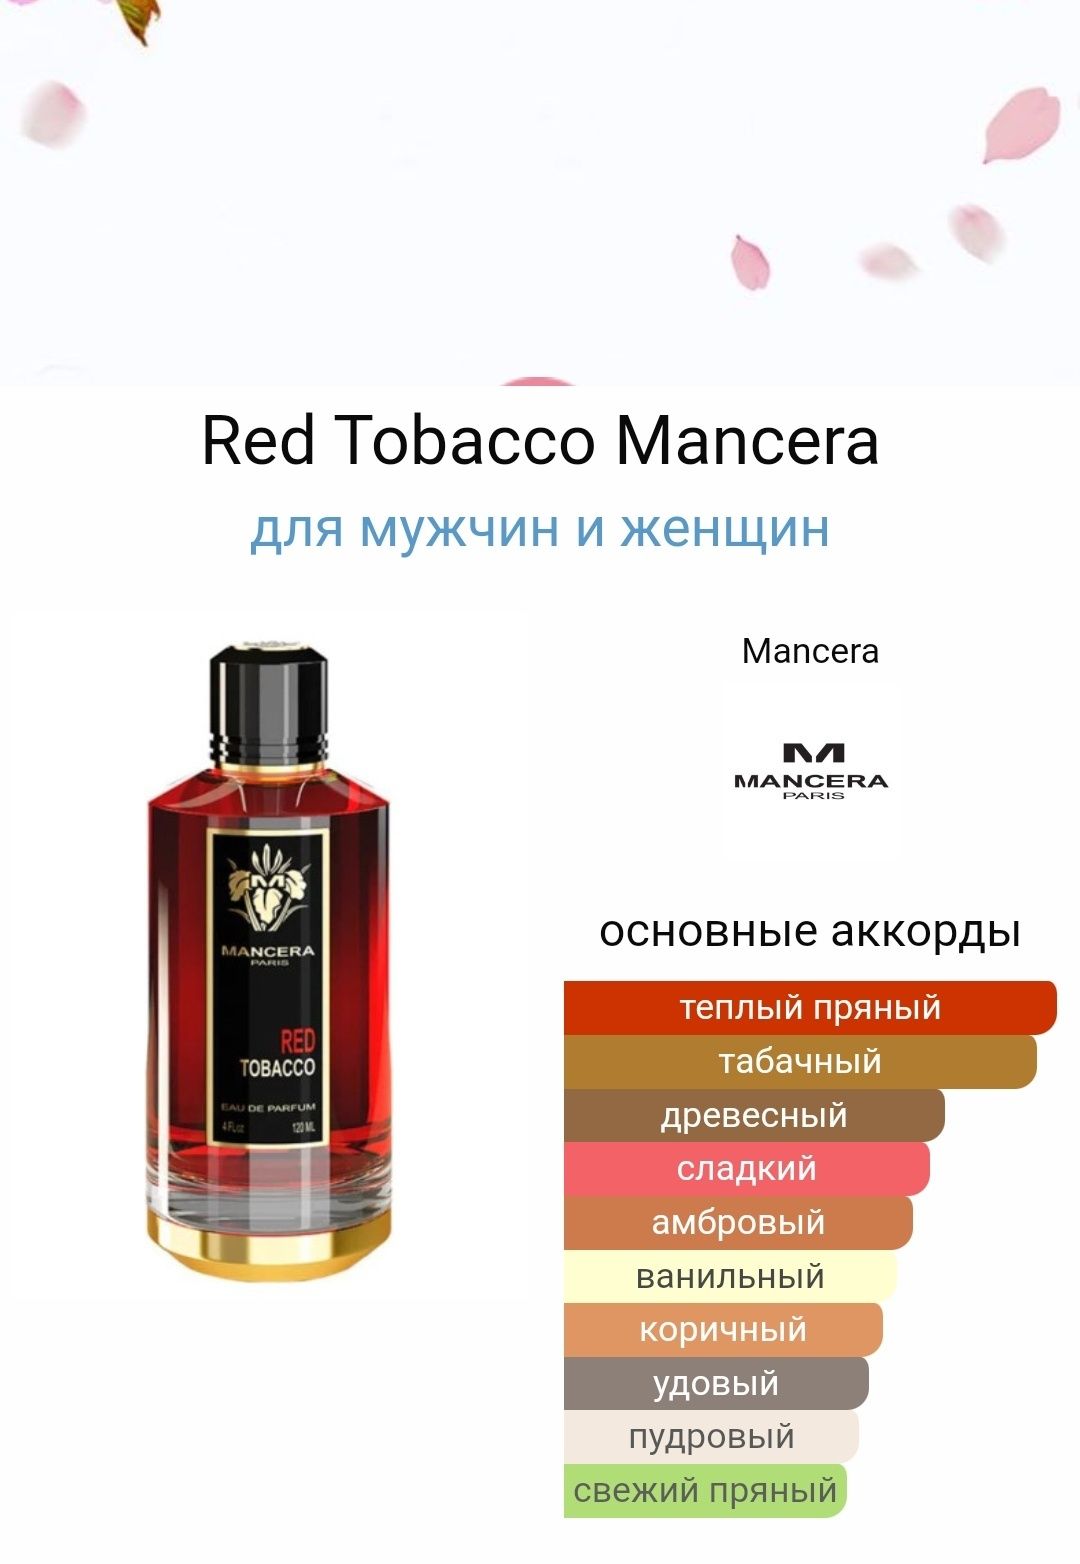 Обучу открытию парфюмерному бизнесу